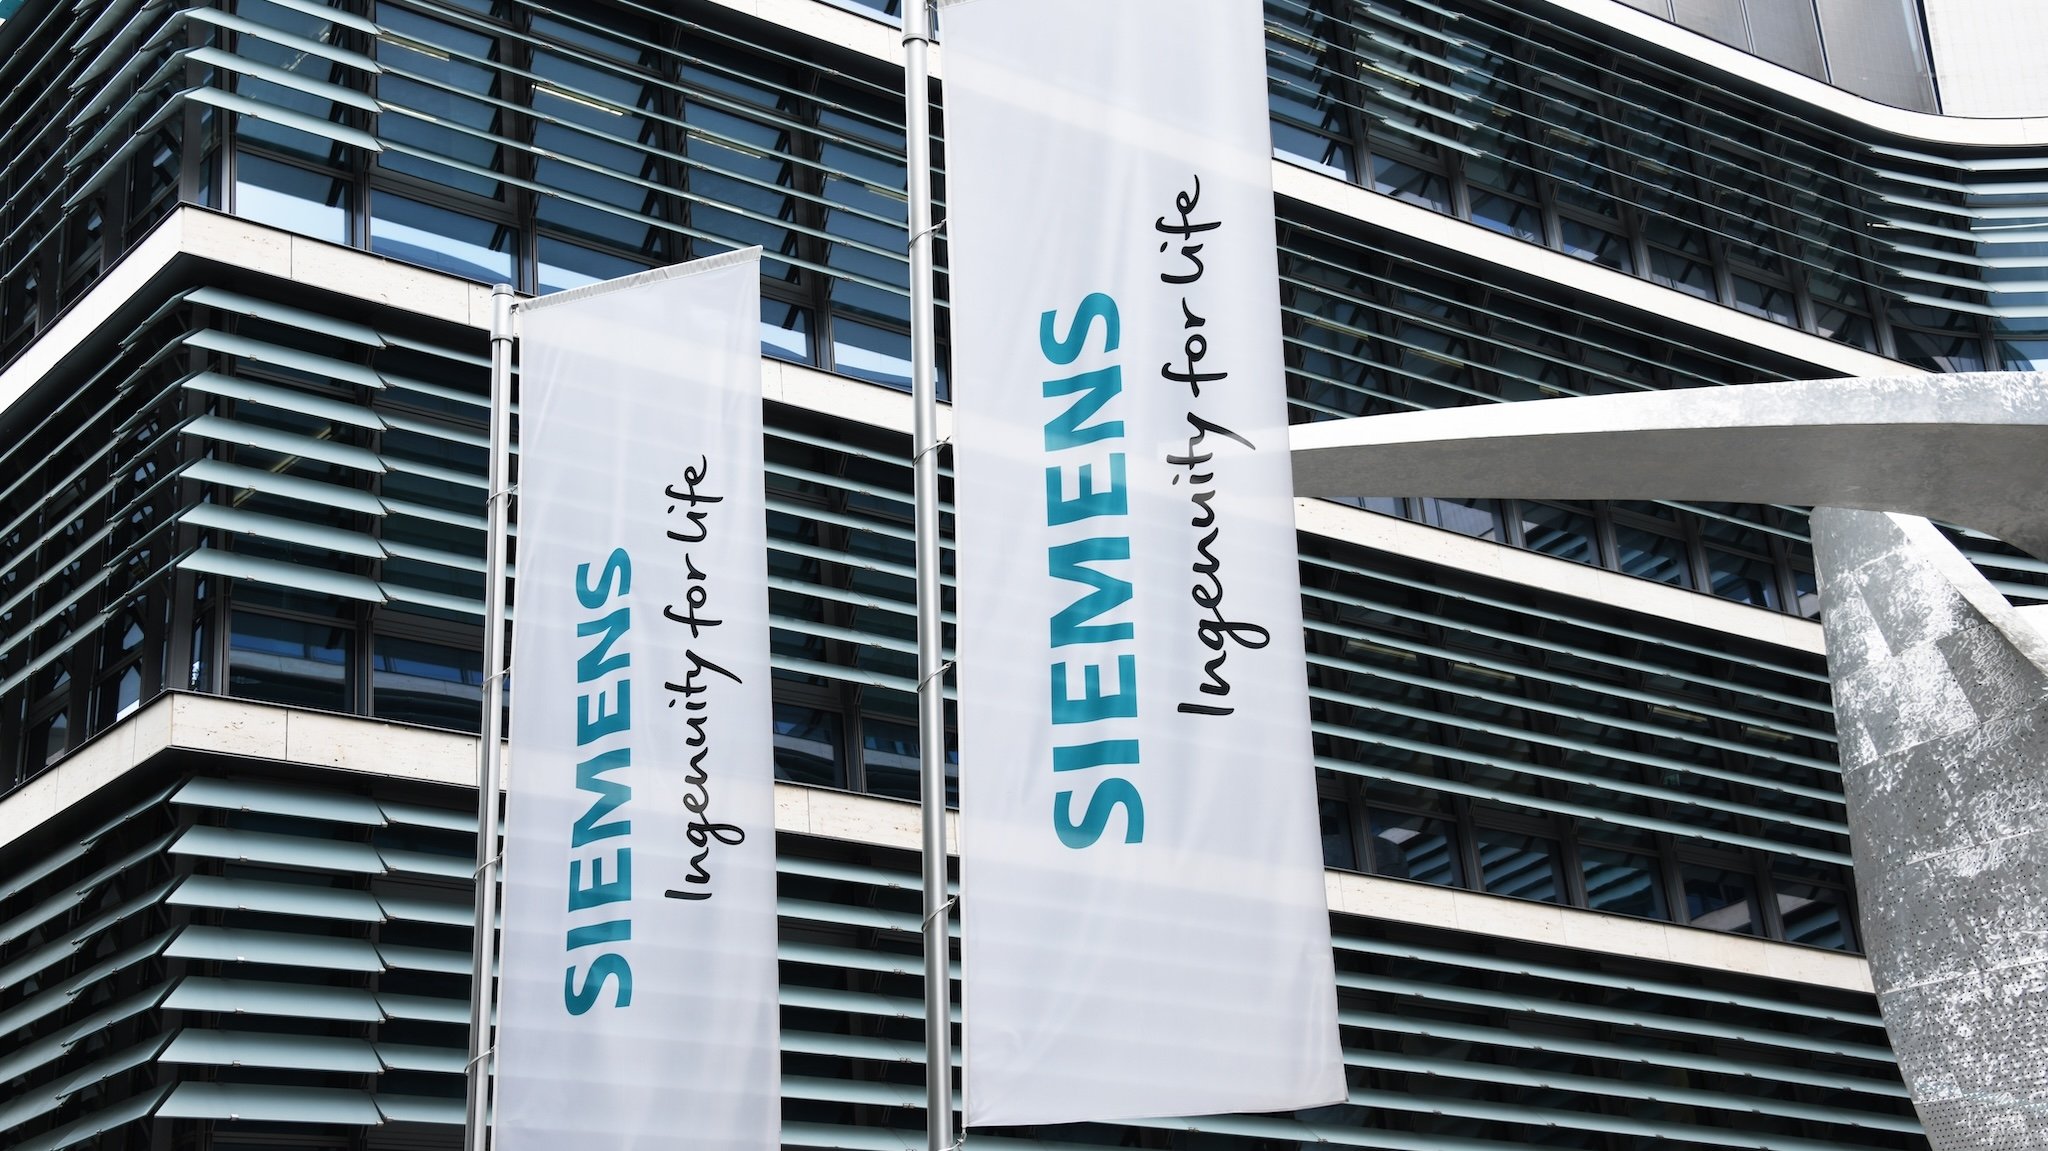 Fahnen vor einem Siemens-Gebäude